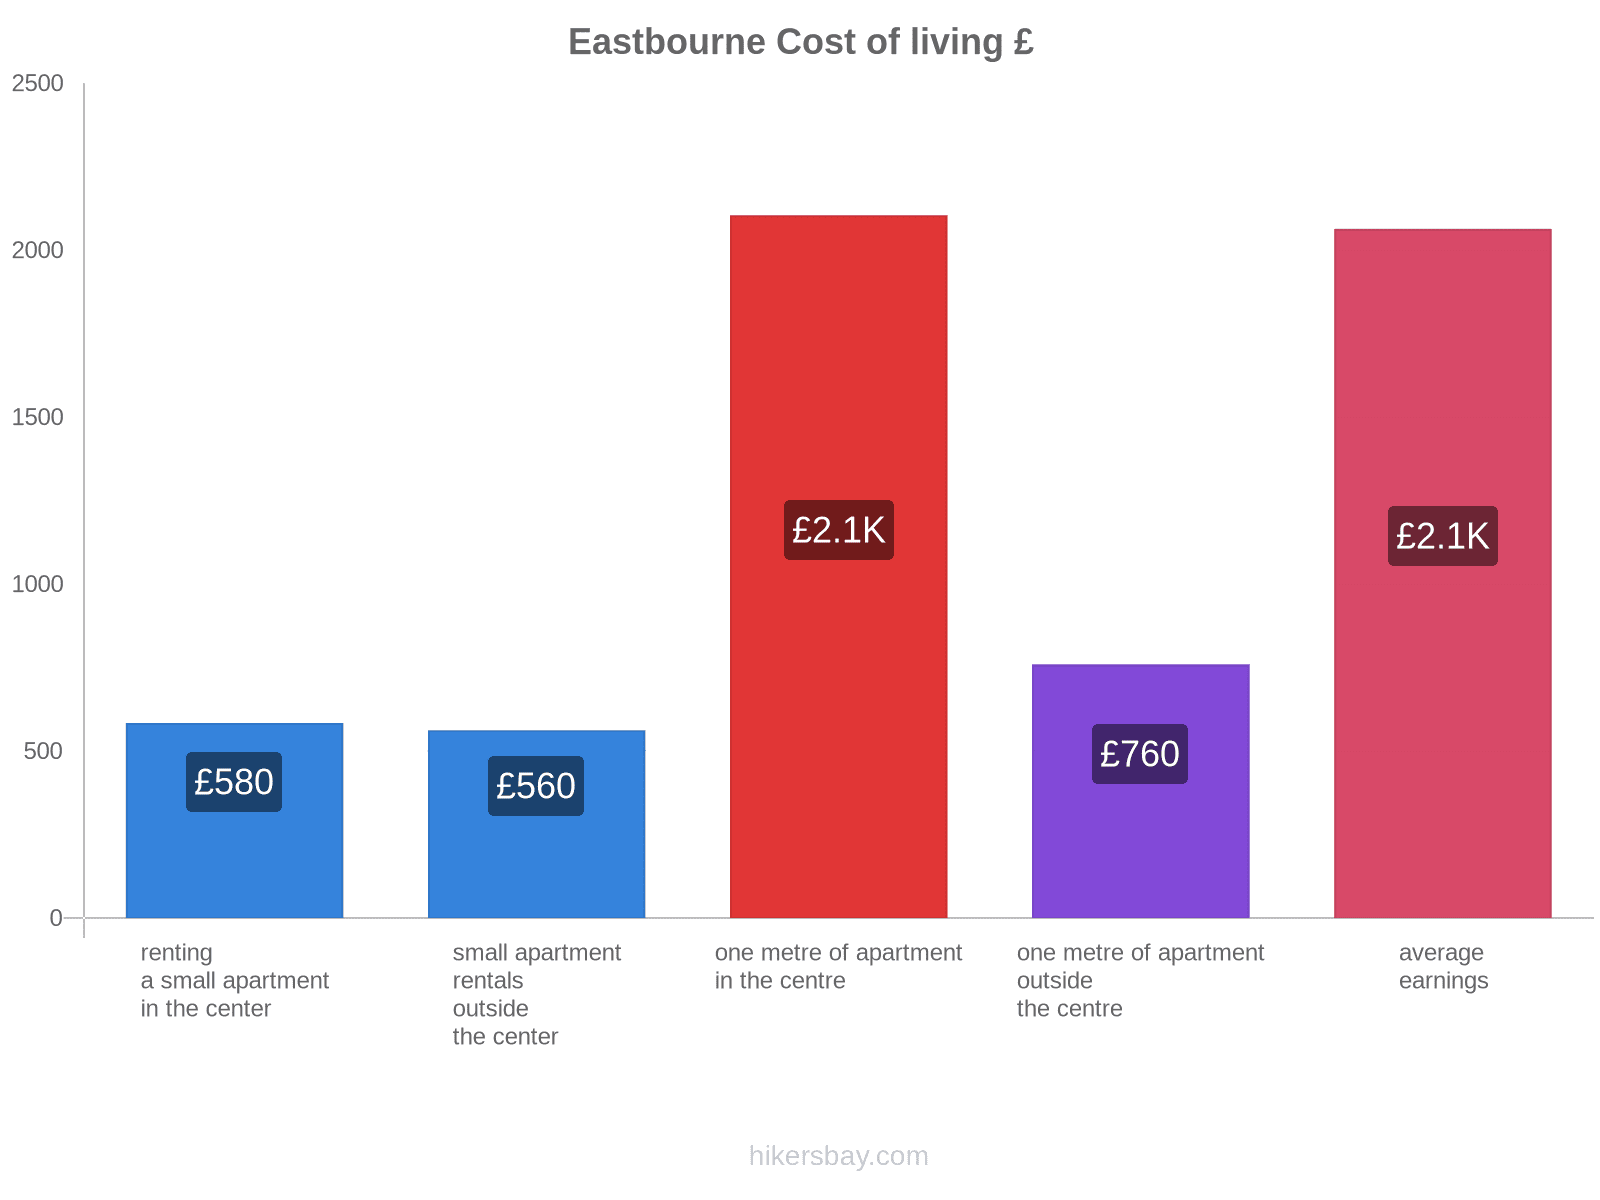 Eastbourne cost of living hikersbay.com